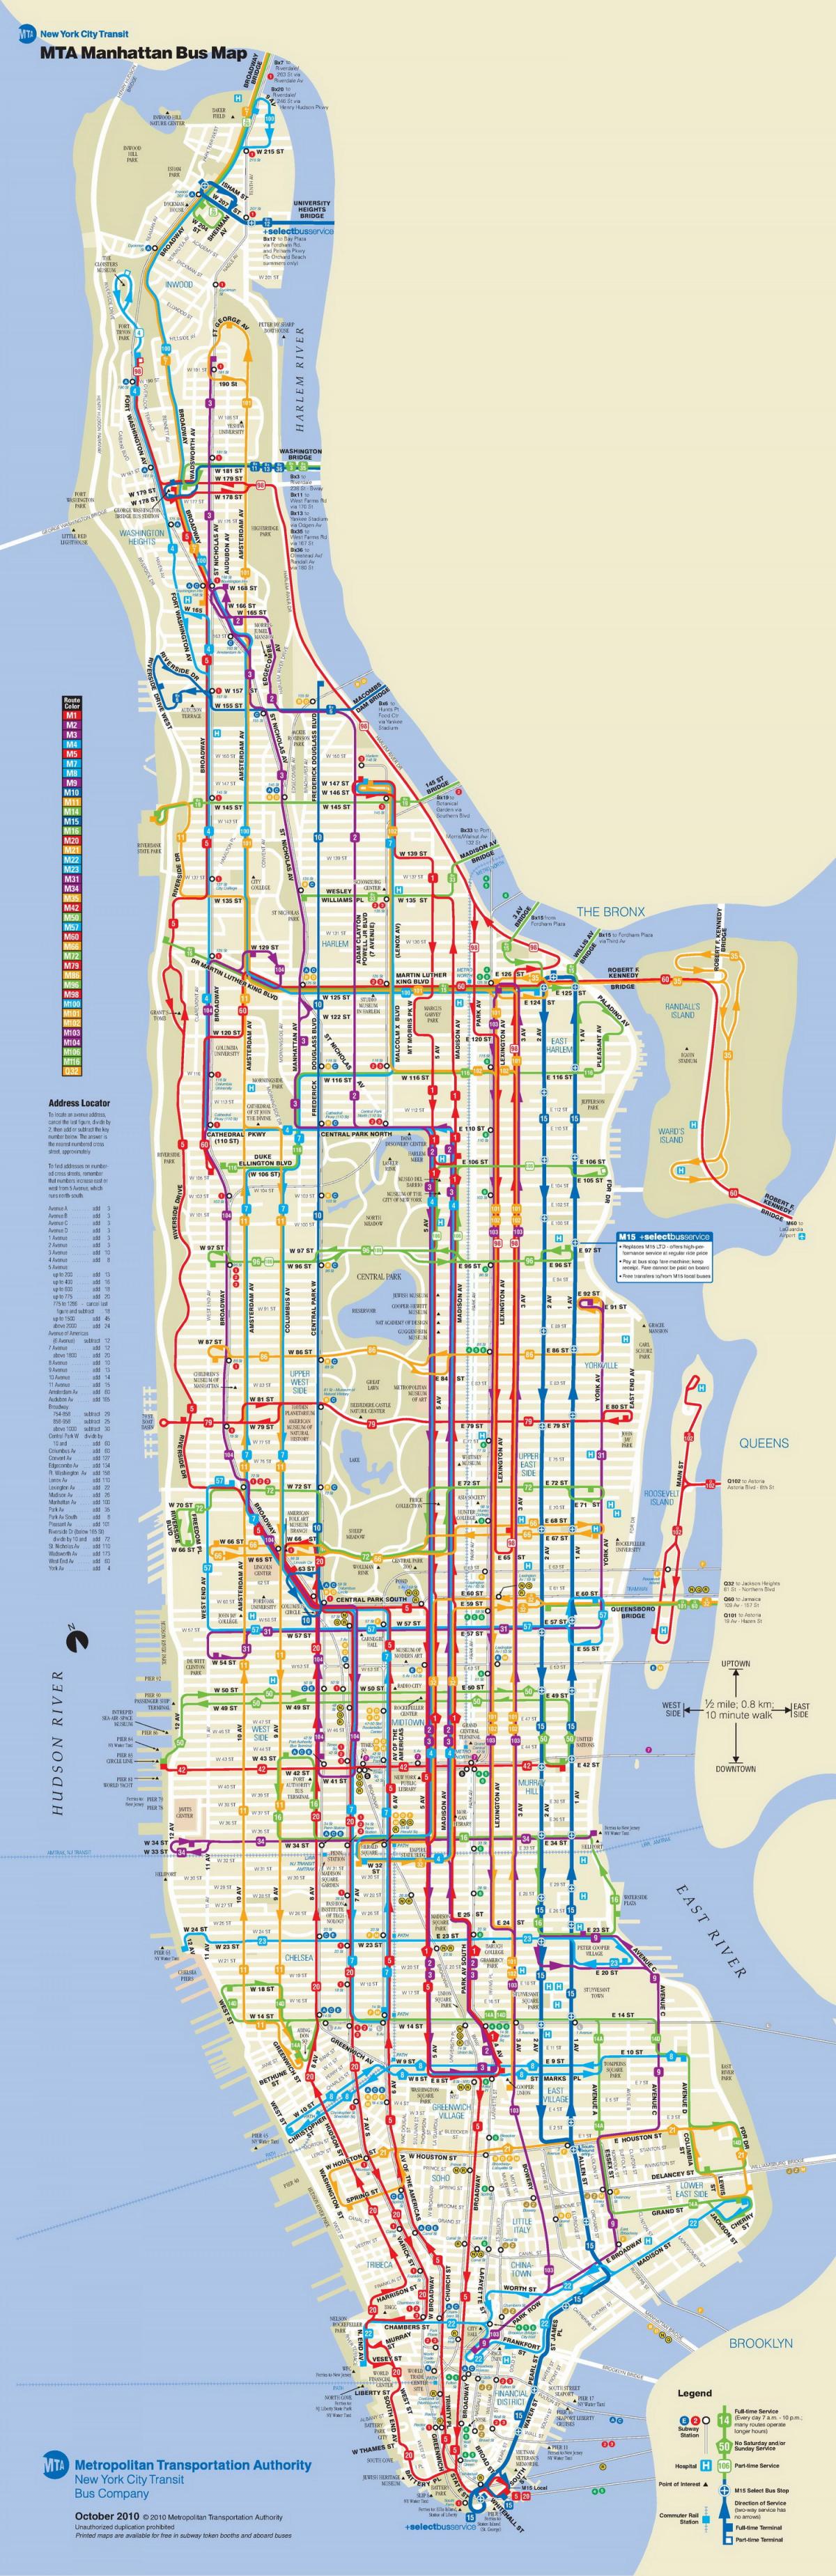 Autobús de la MTA mapa de manhattan